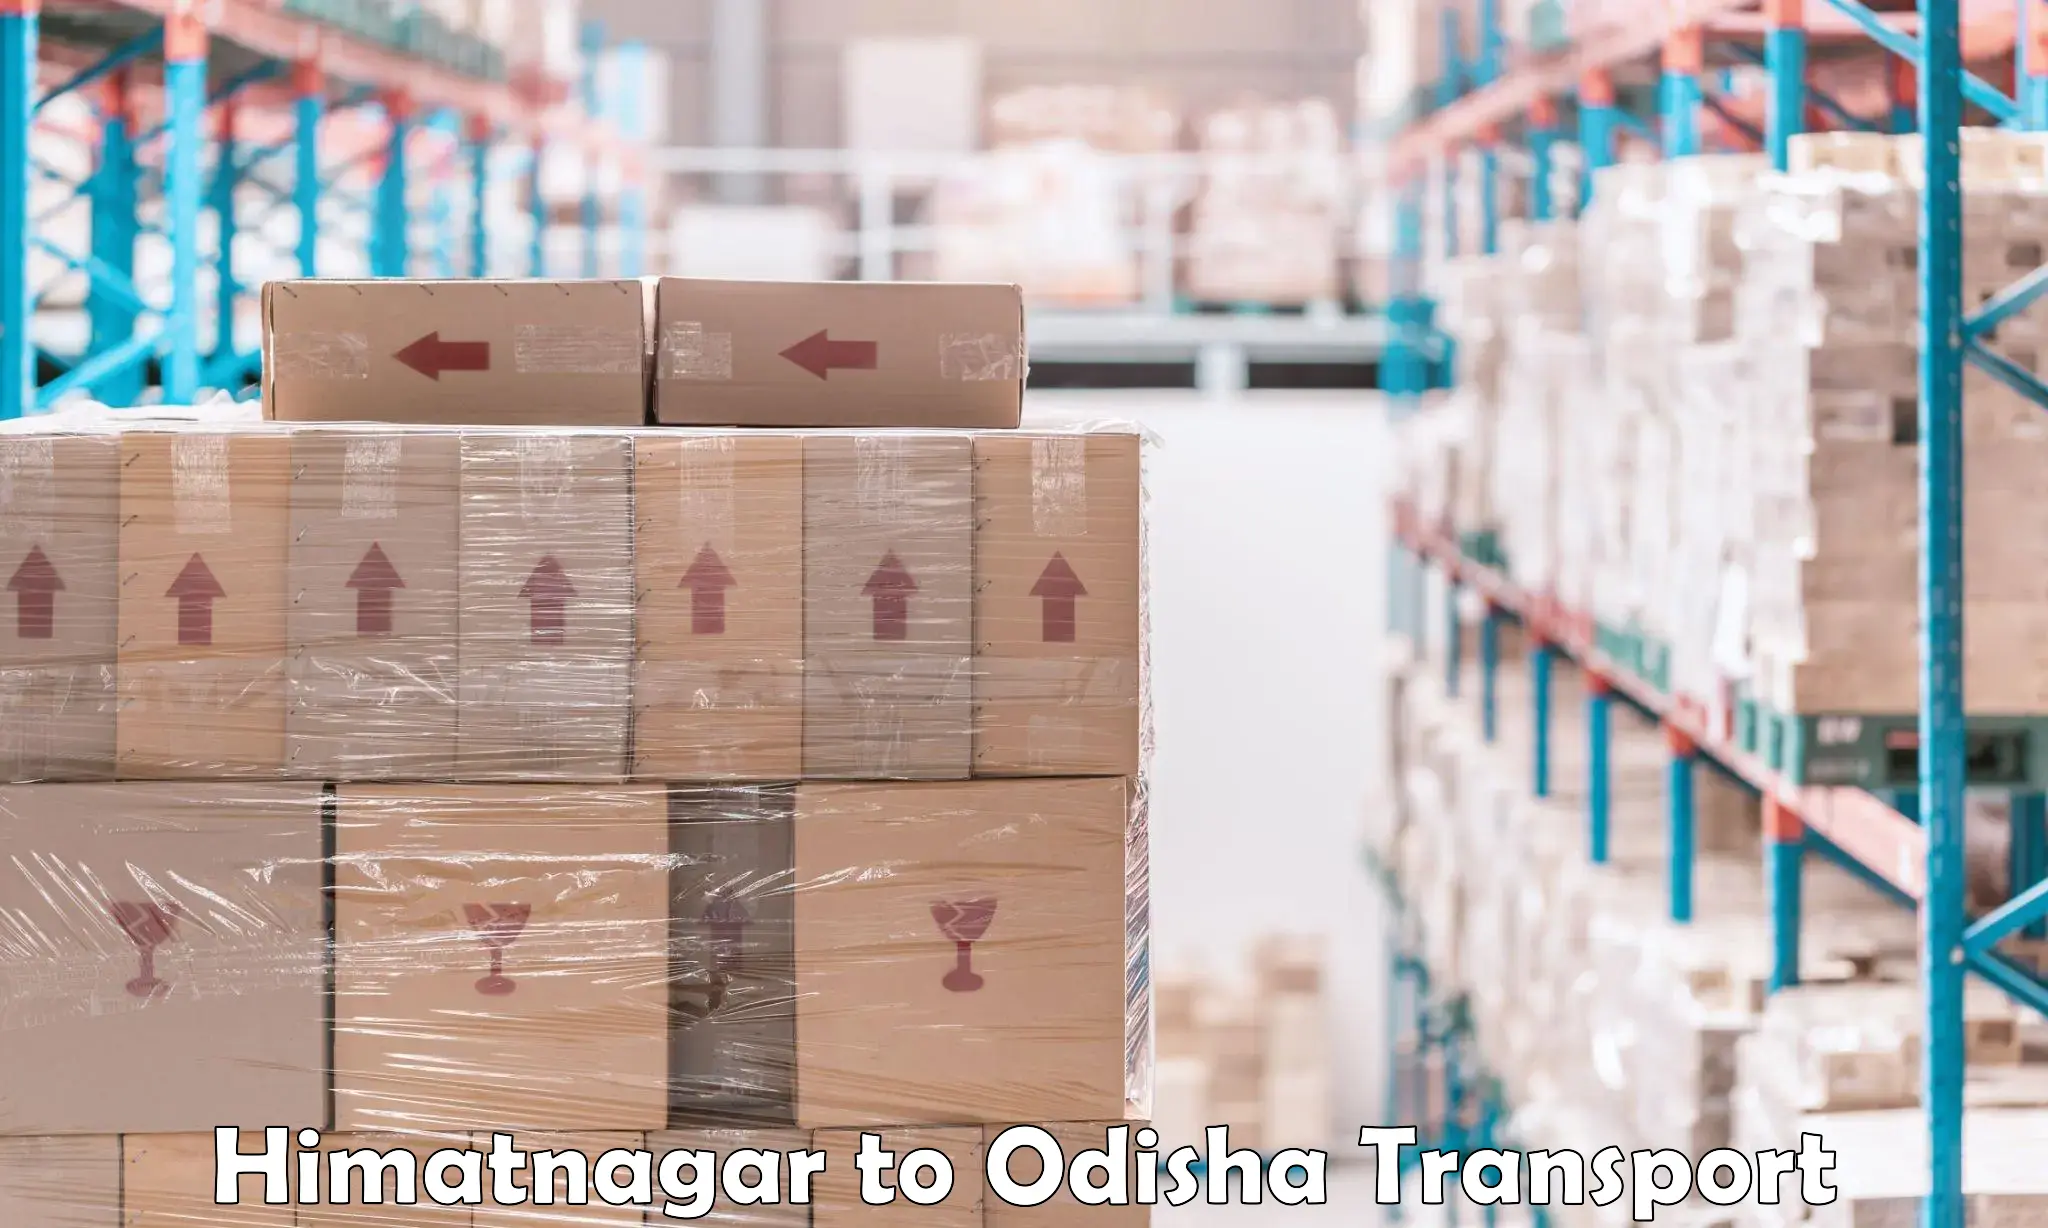 Online transport service Himatnagar to Titilagarh